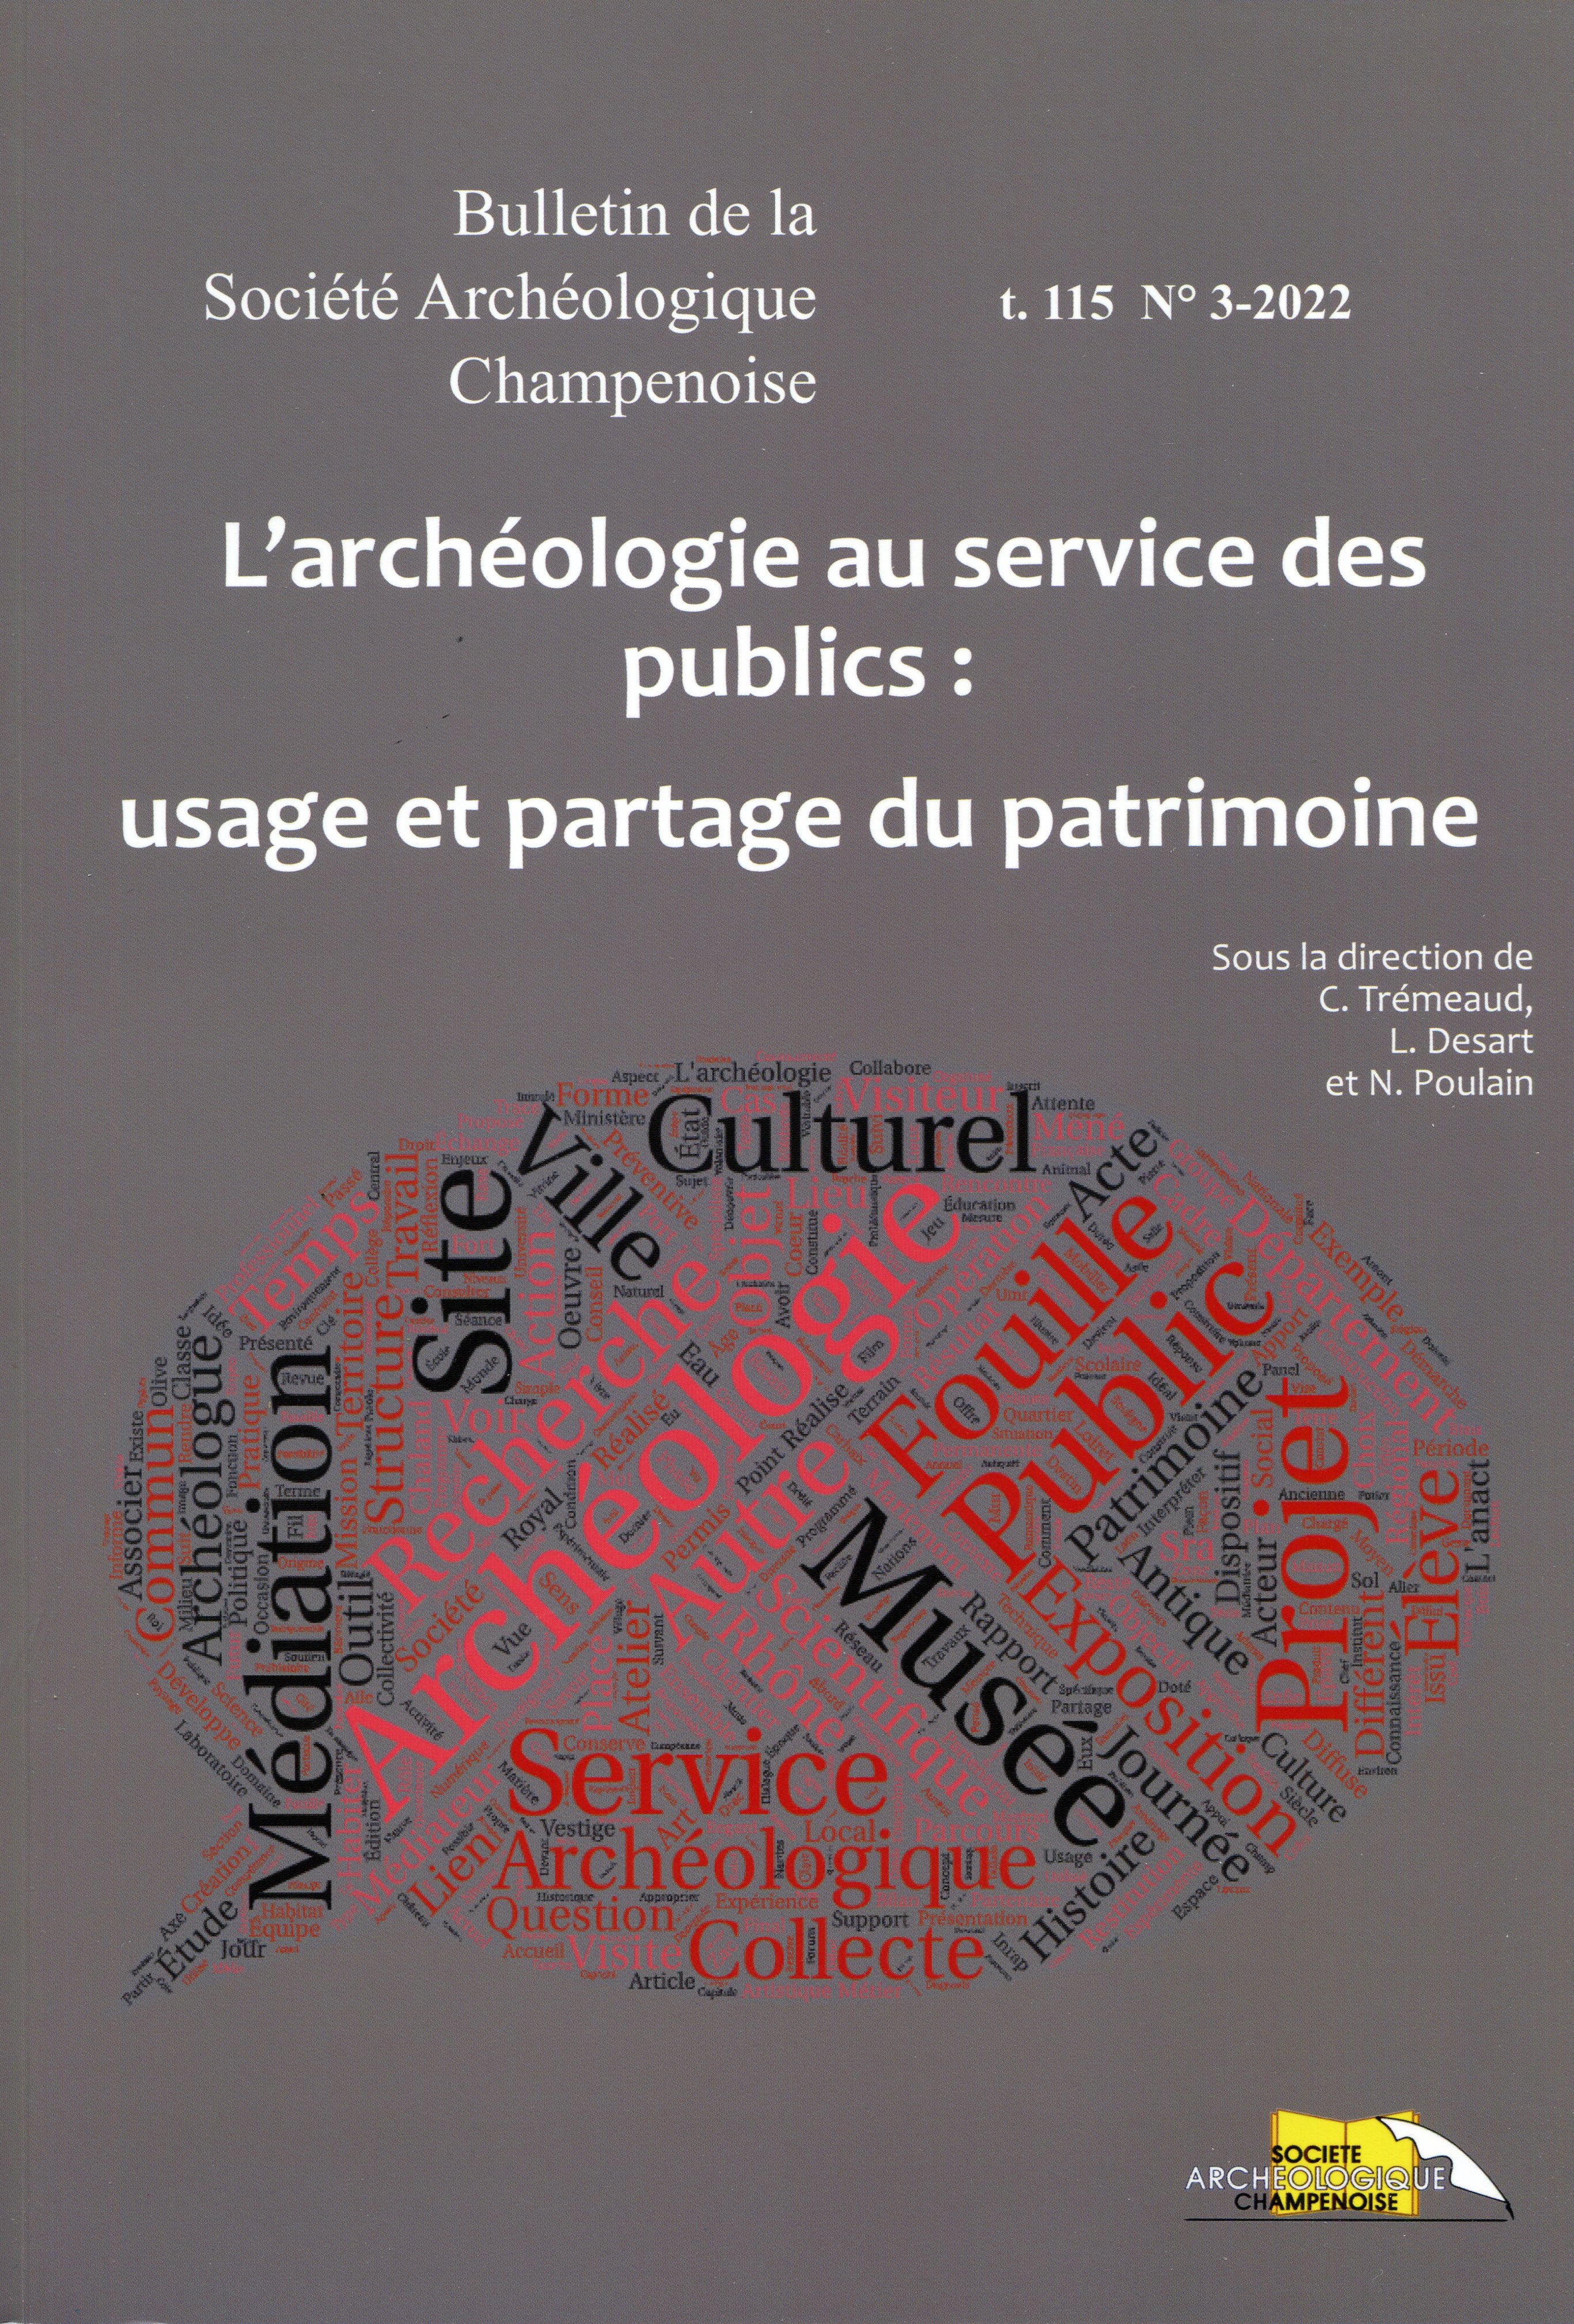 L'archéologie au service des publics : usages et partage du patrimoine, (actes XIe journées de l'ANACT, Charleville-Mézières, nov. 2018), 2023, 168 p.